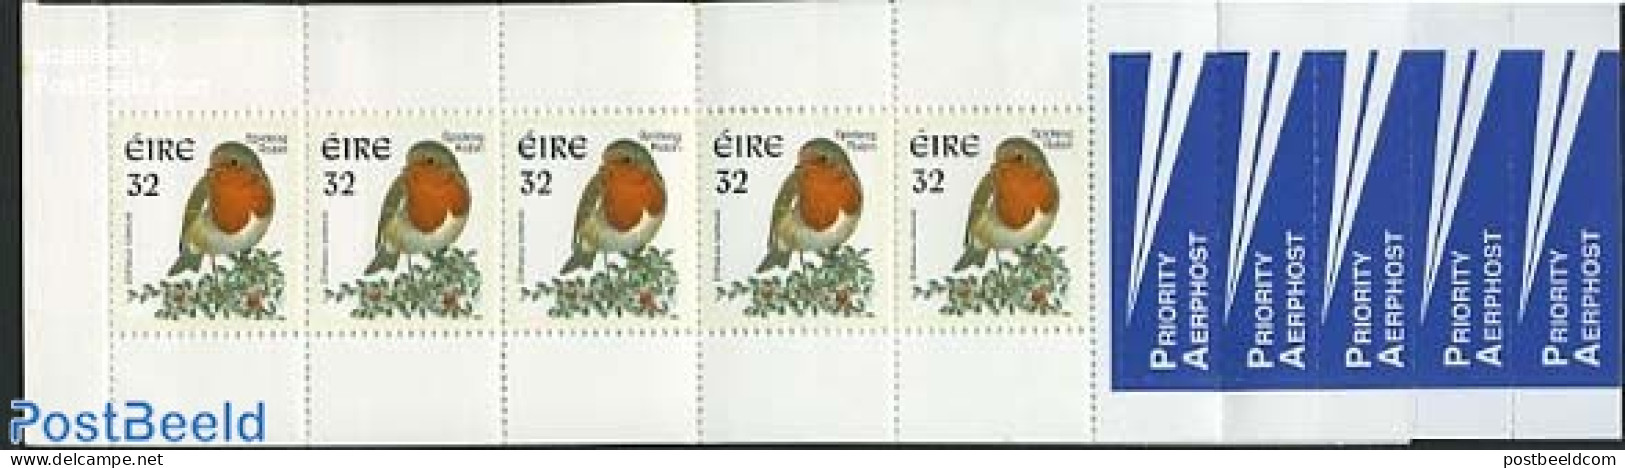 Ireland 1997 Birds Booklet, Mint NH, Nature - Birds - Stamp Booklets - Ongebruikt